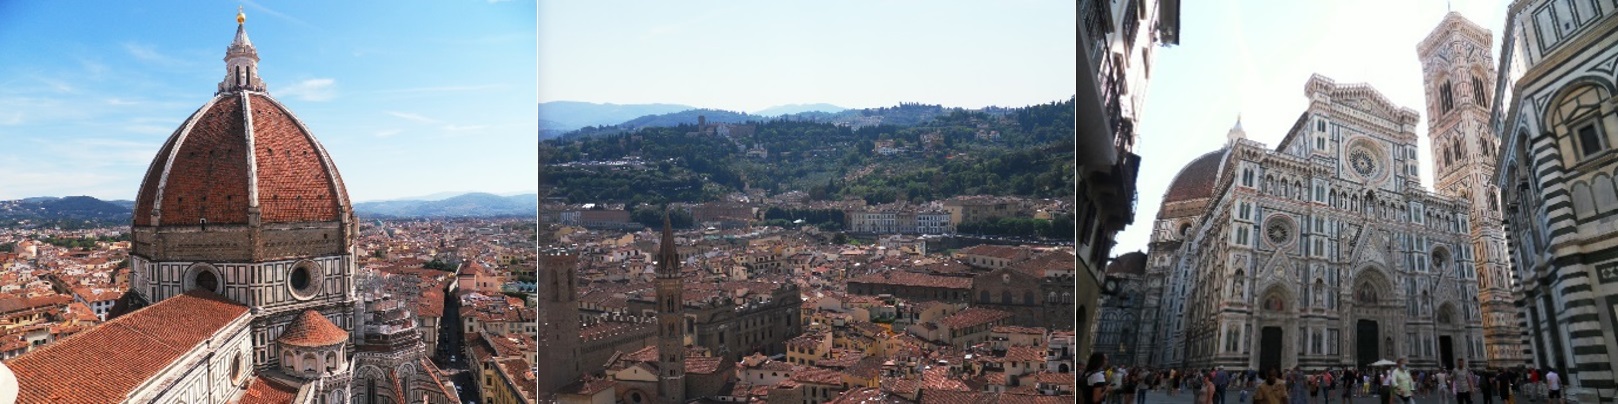 Florenz – Dom und Blick davon